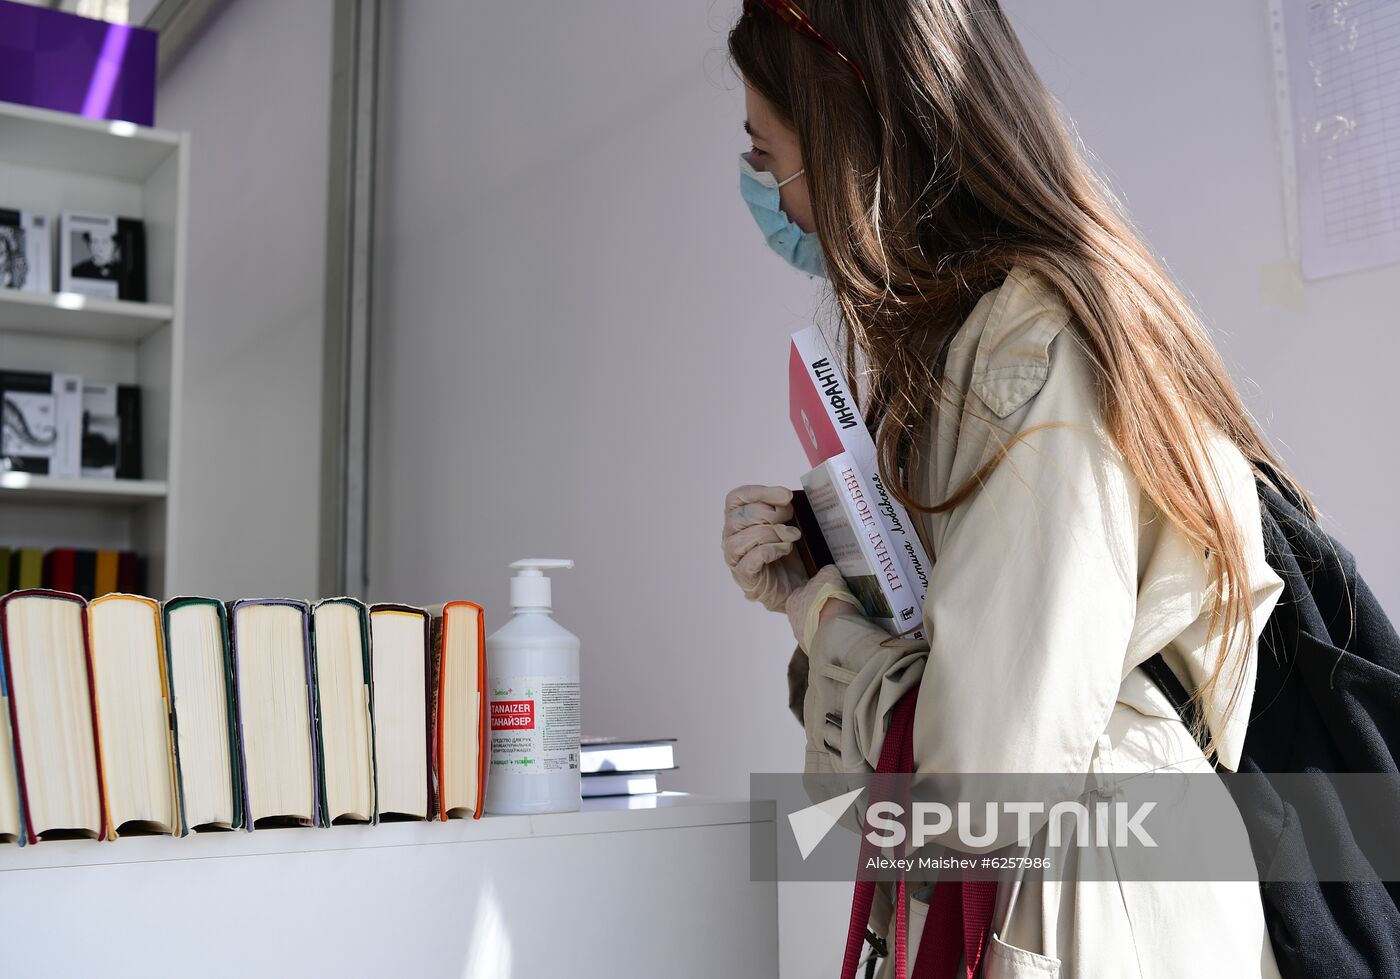 Russia Book Festival